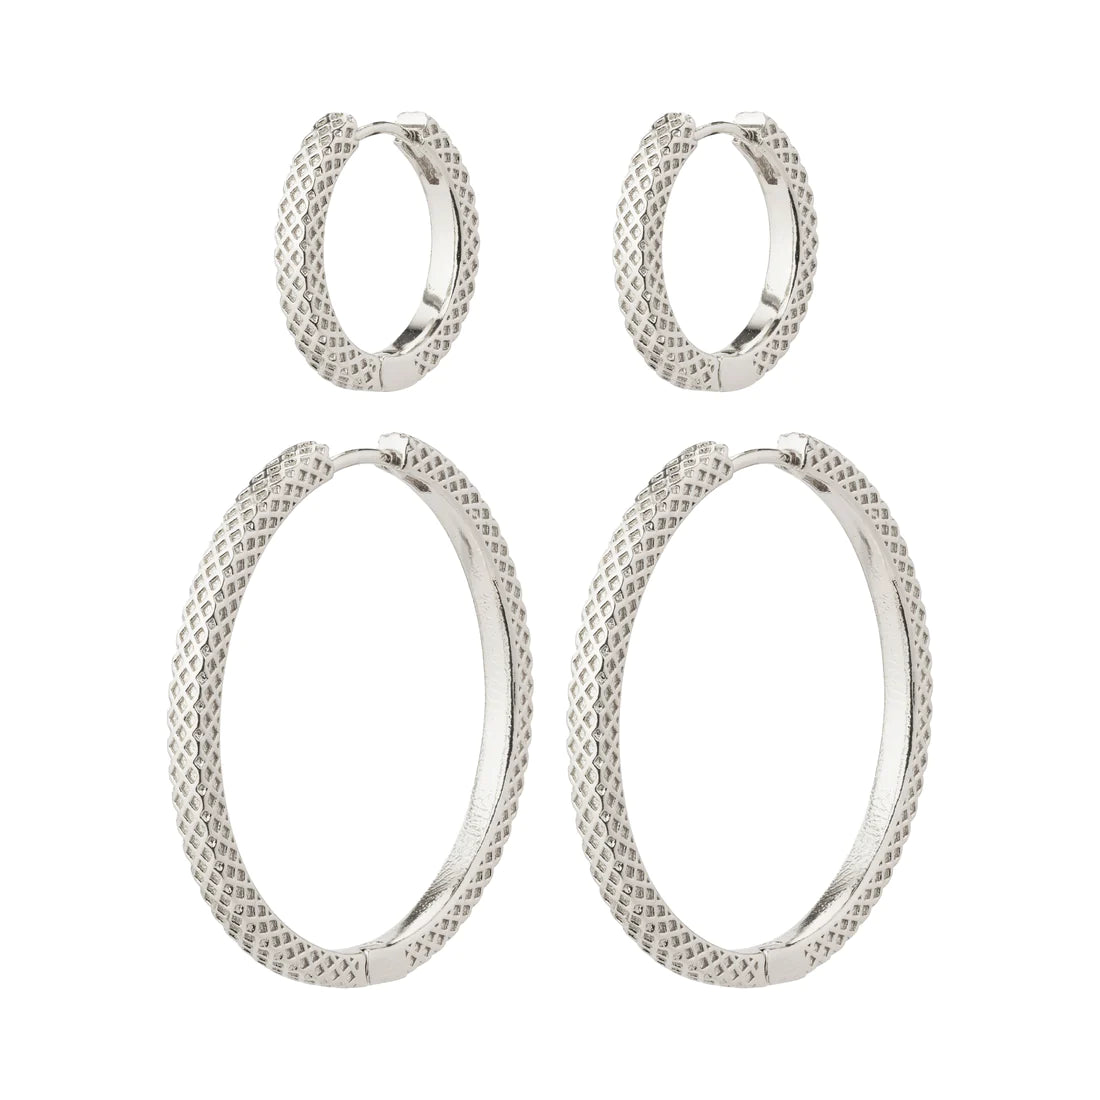 102336003 // 102332003 recycled earrings 2-in-1 set